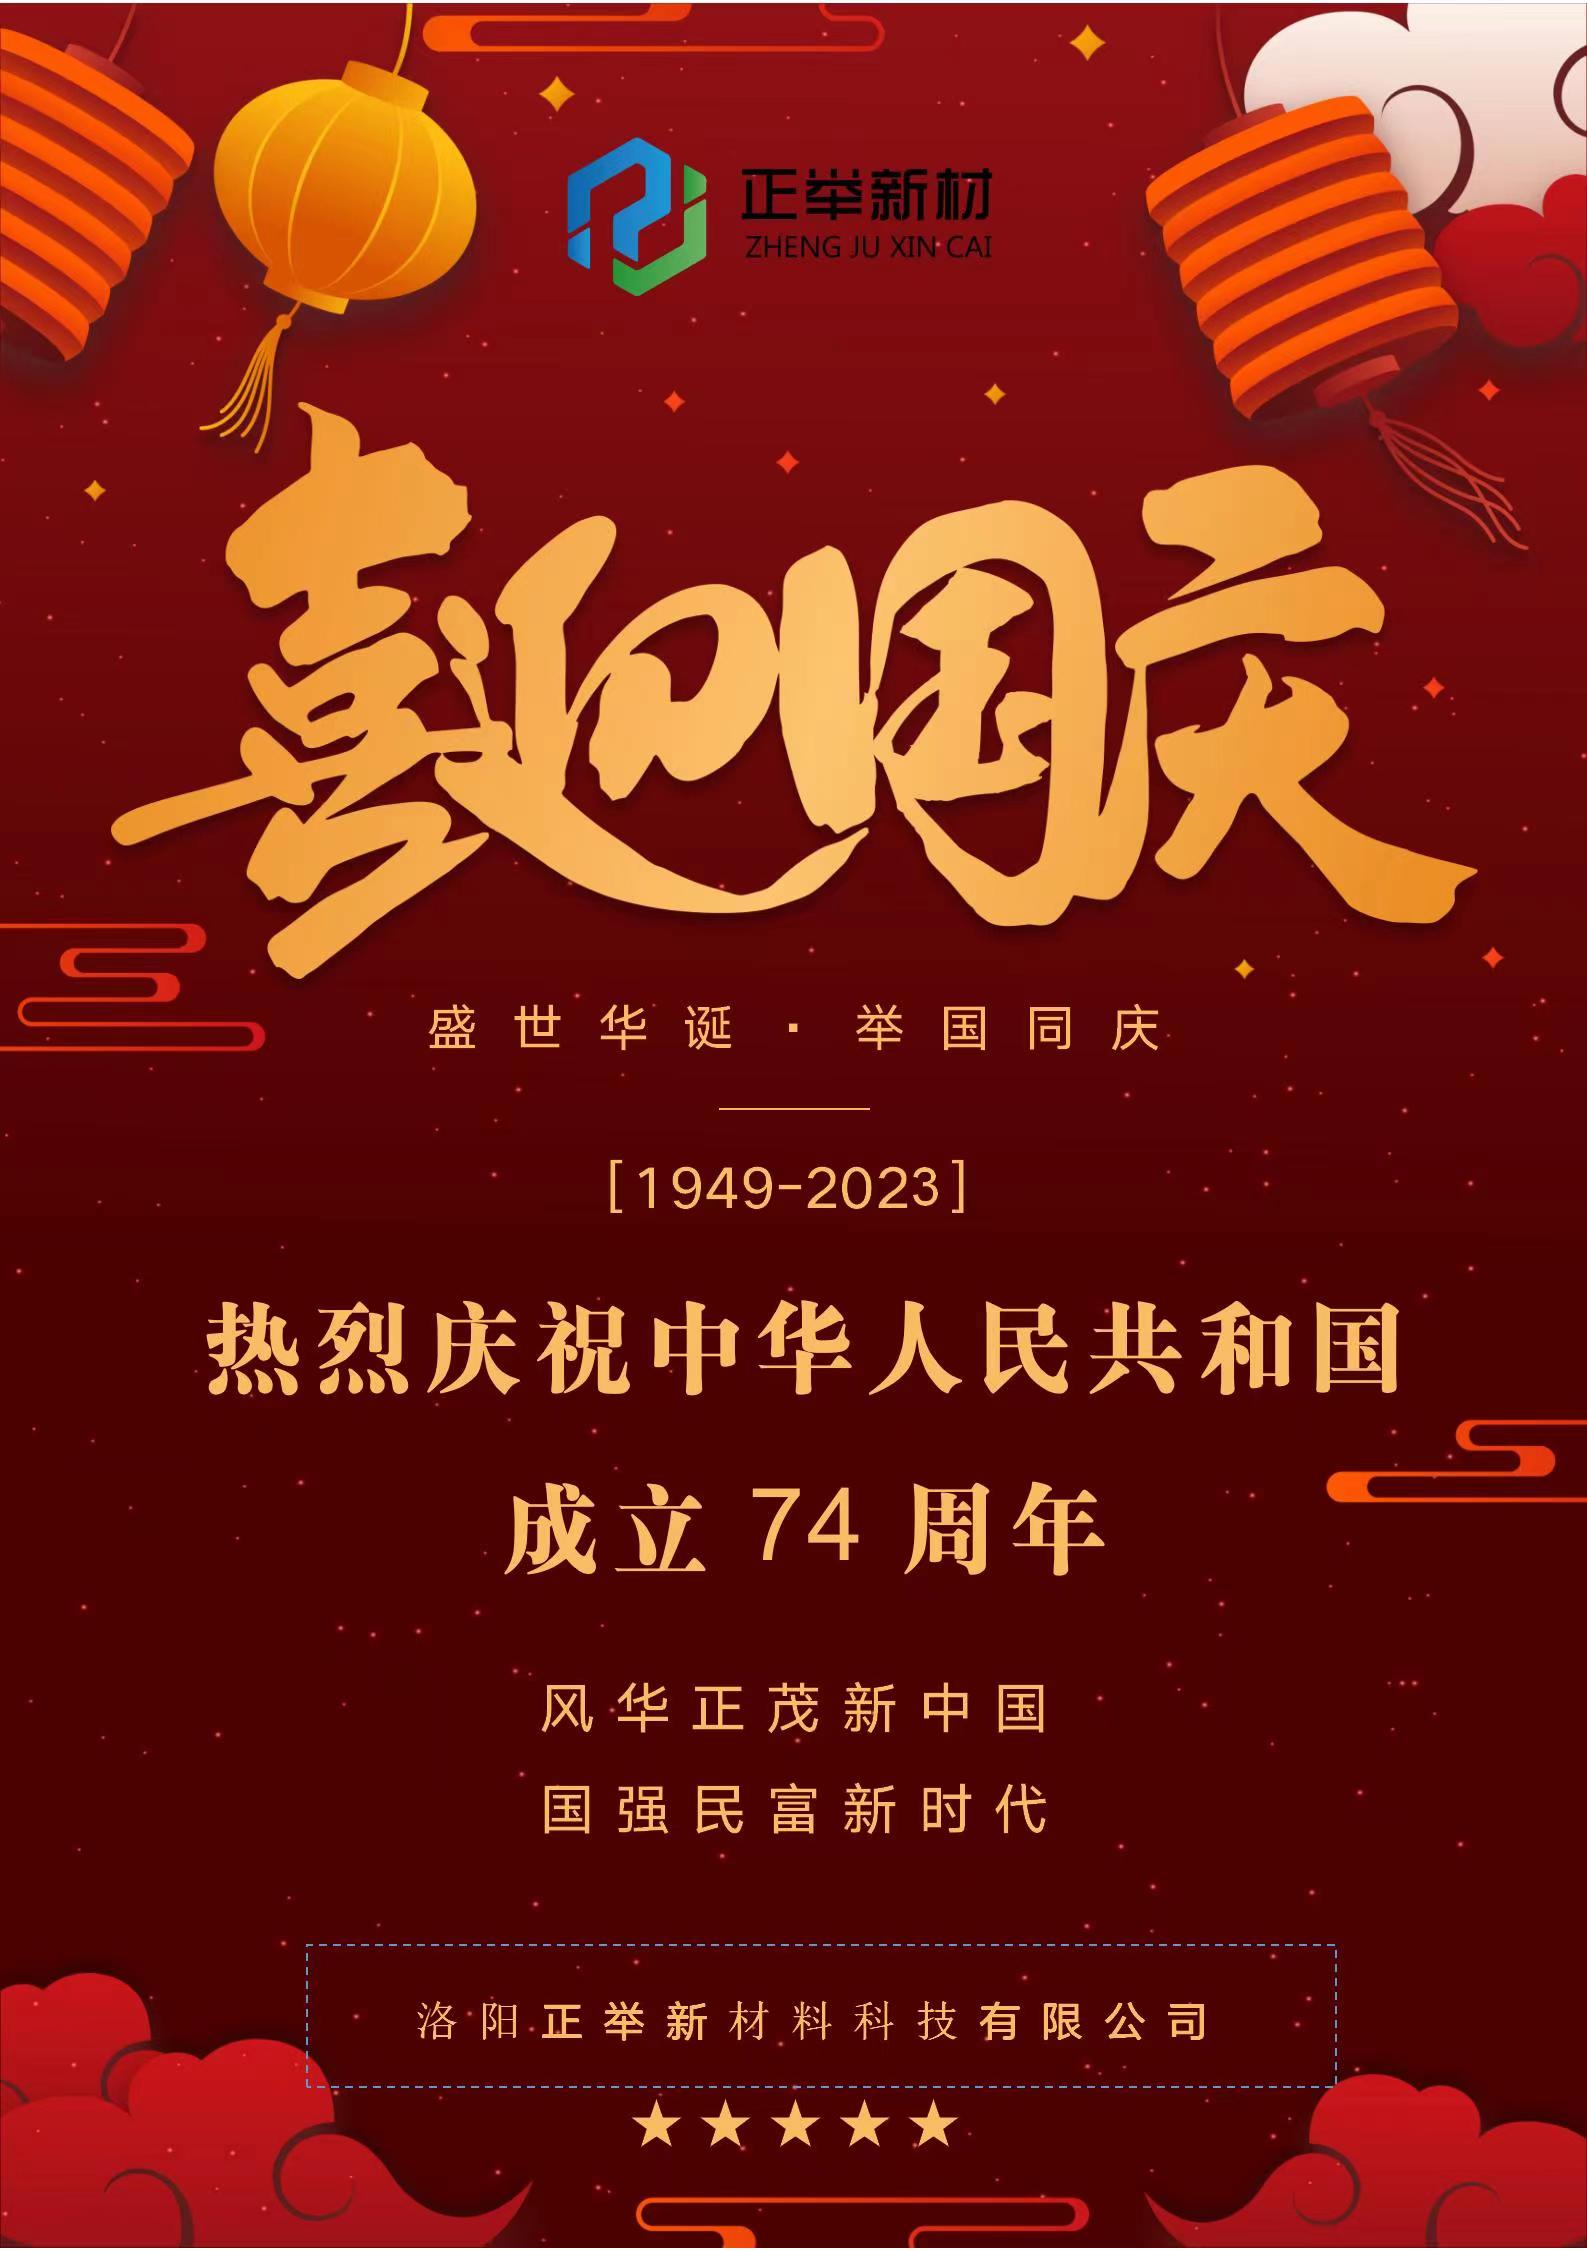 熱烈慶祝中華人民共和國成立74周年1949-2023(圖1)